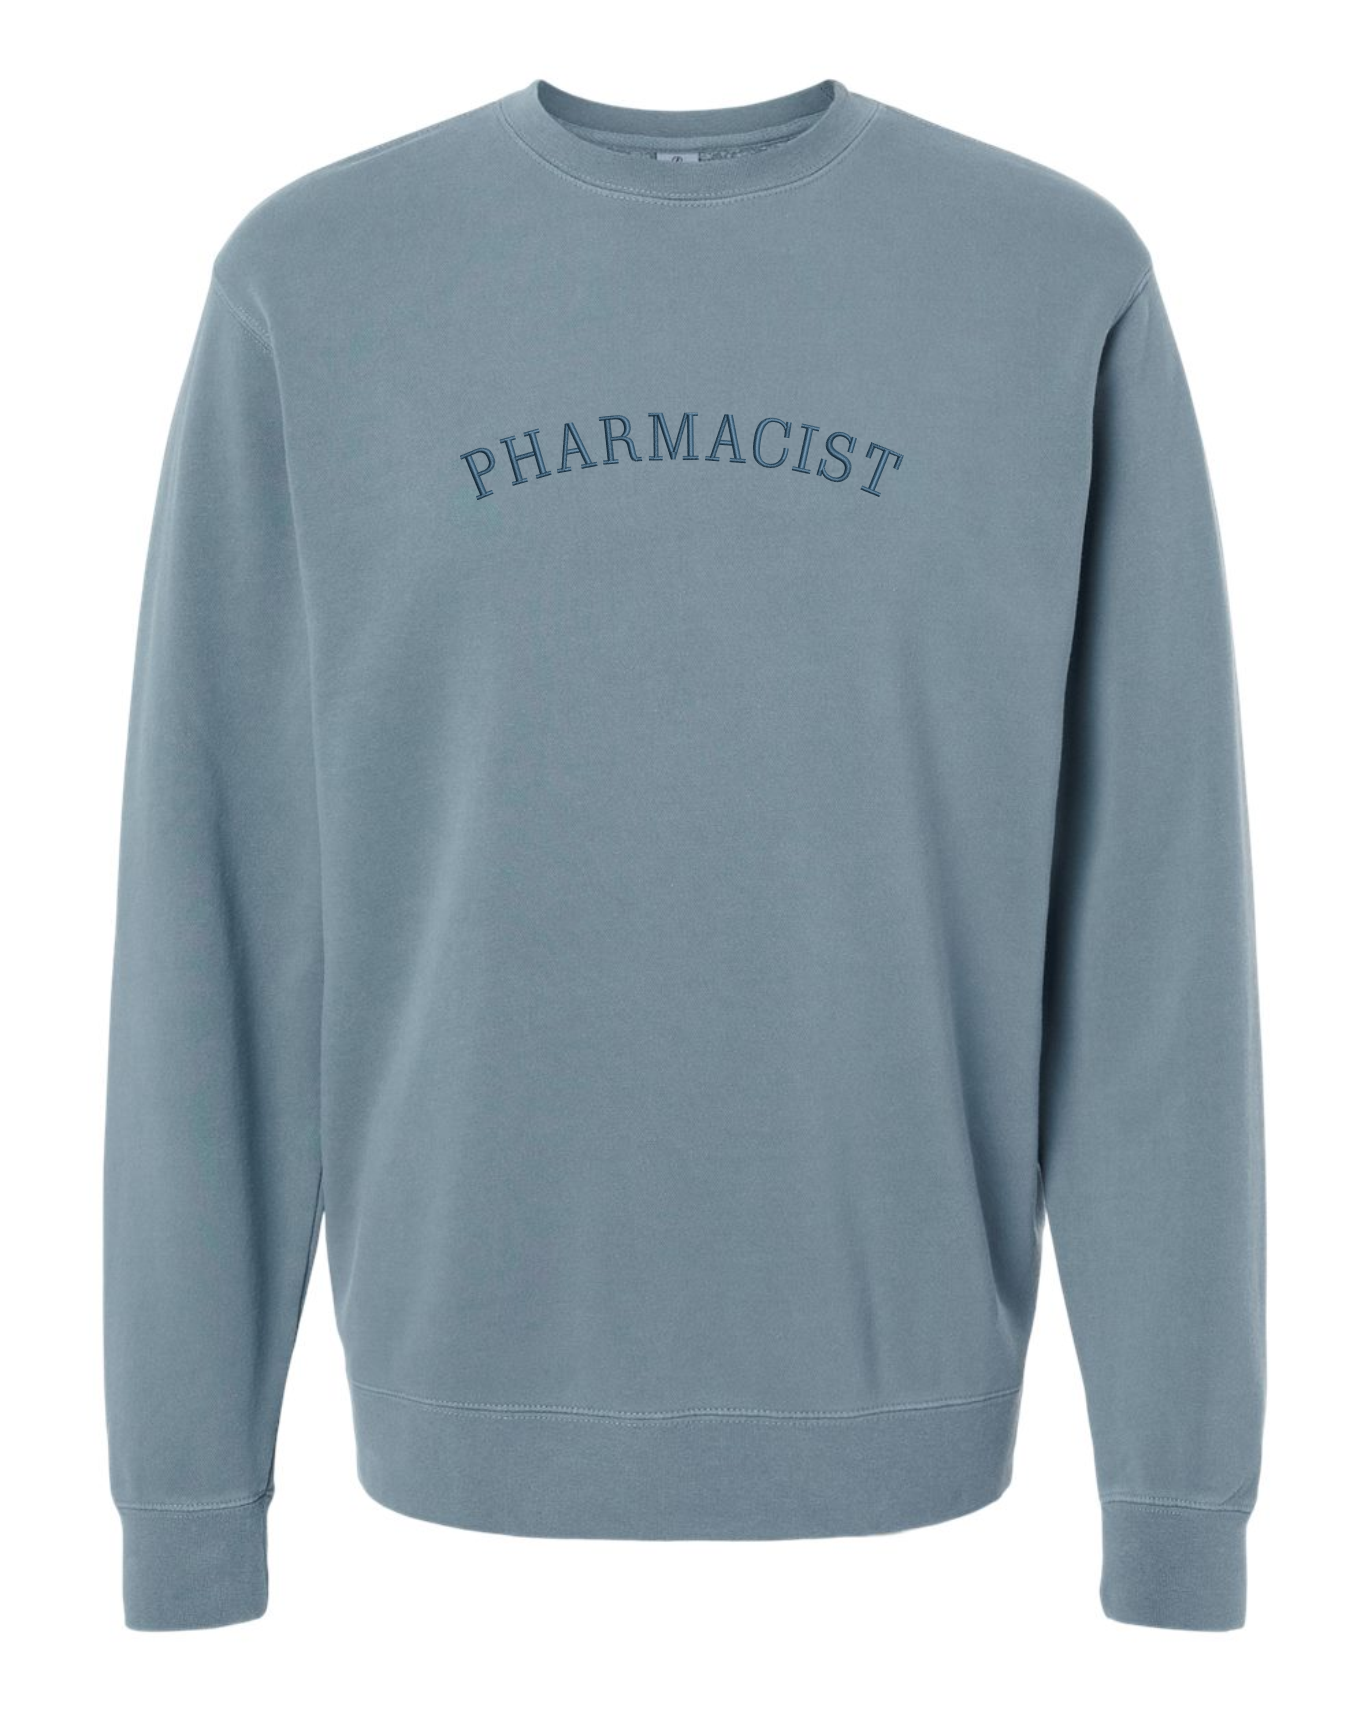 Pharmacist Embroidered Crewneck | Slate Blue